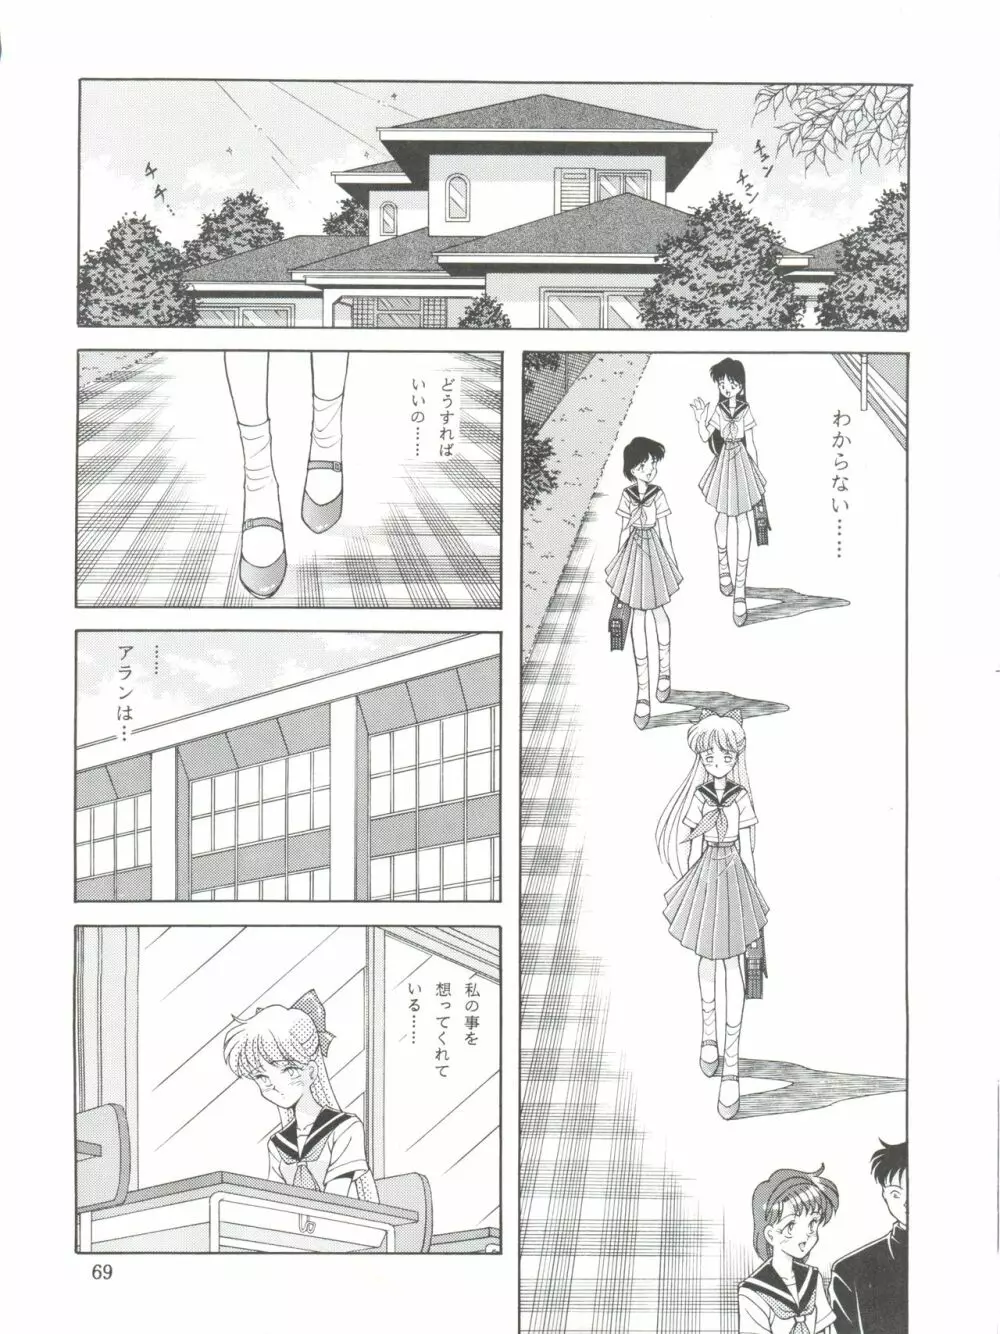 NANIWA-YA FINAL DRESS UP! - page69